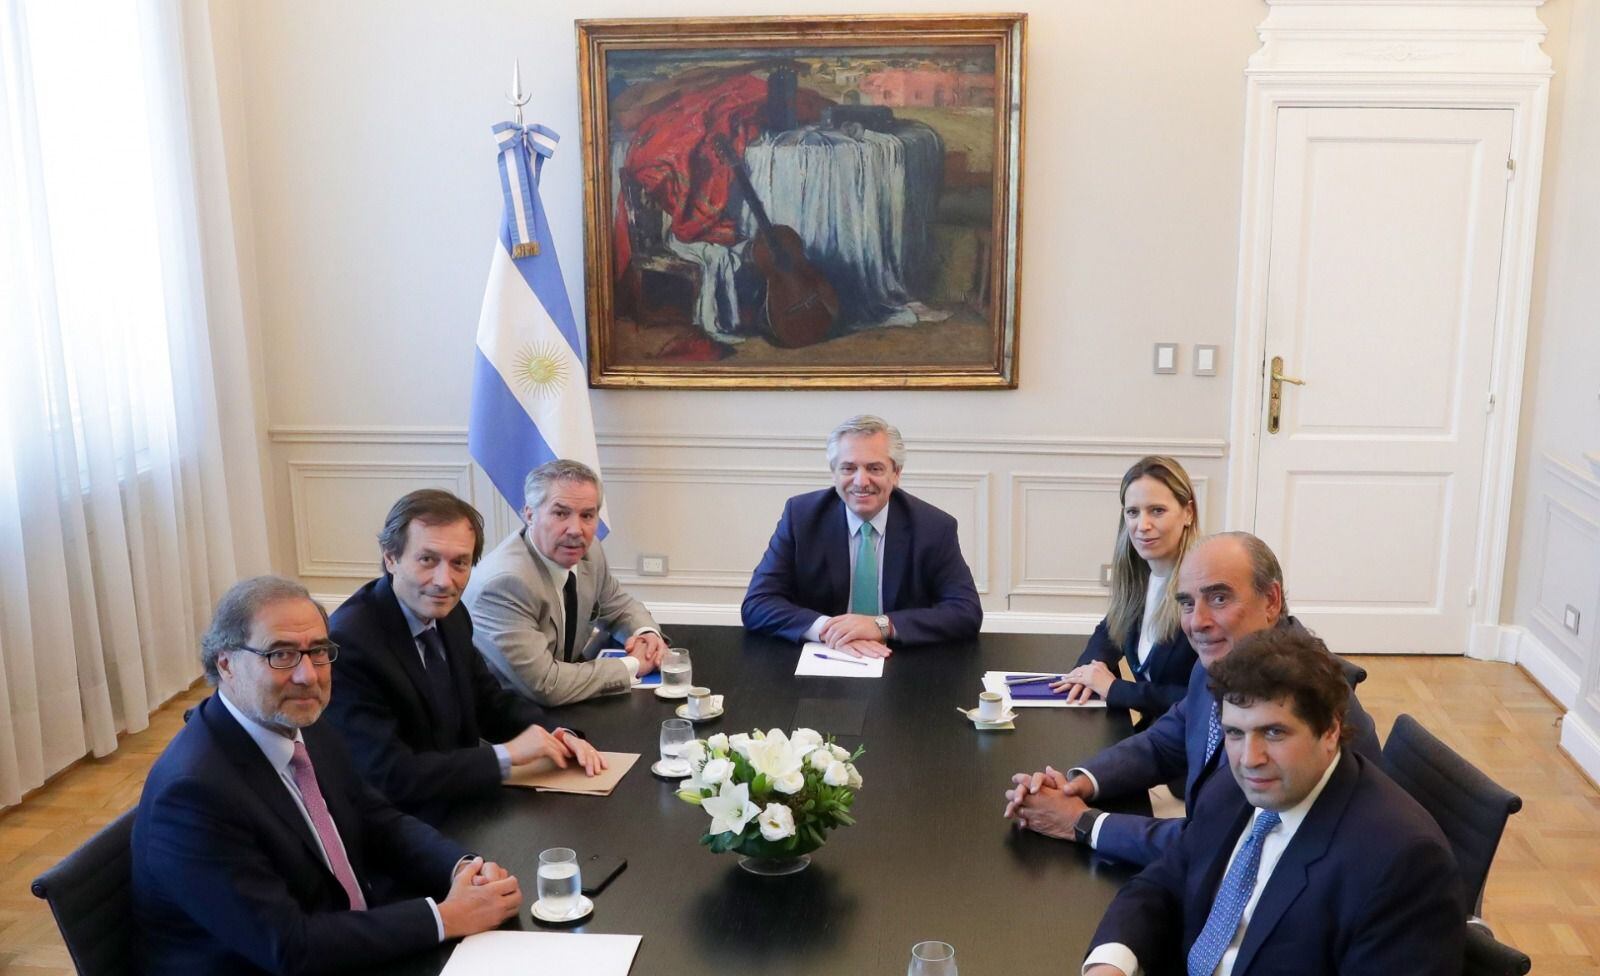 Con dificultades, la transición al nuevo gobierno ya da sus primeros pasos y se espera una reunión entre Alberto Fernández y Javier Milei